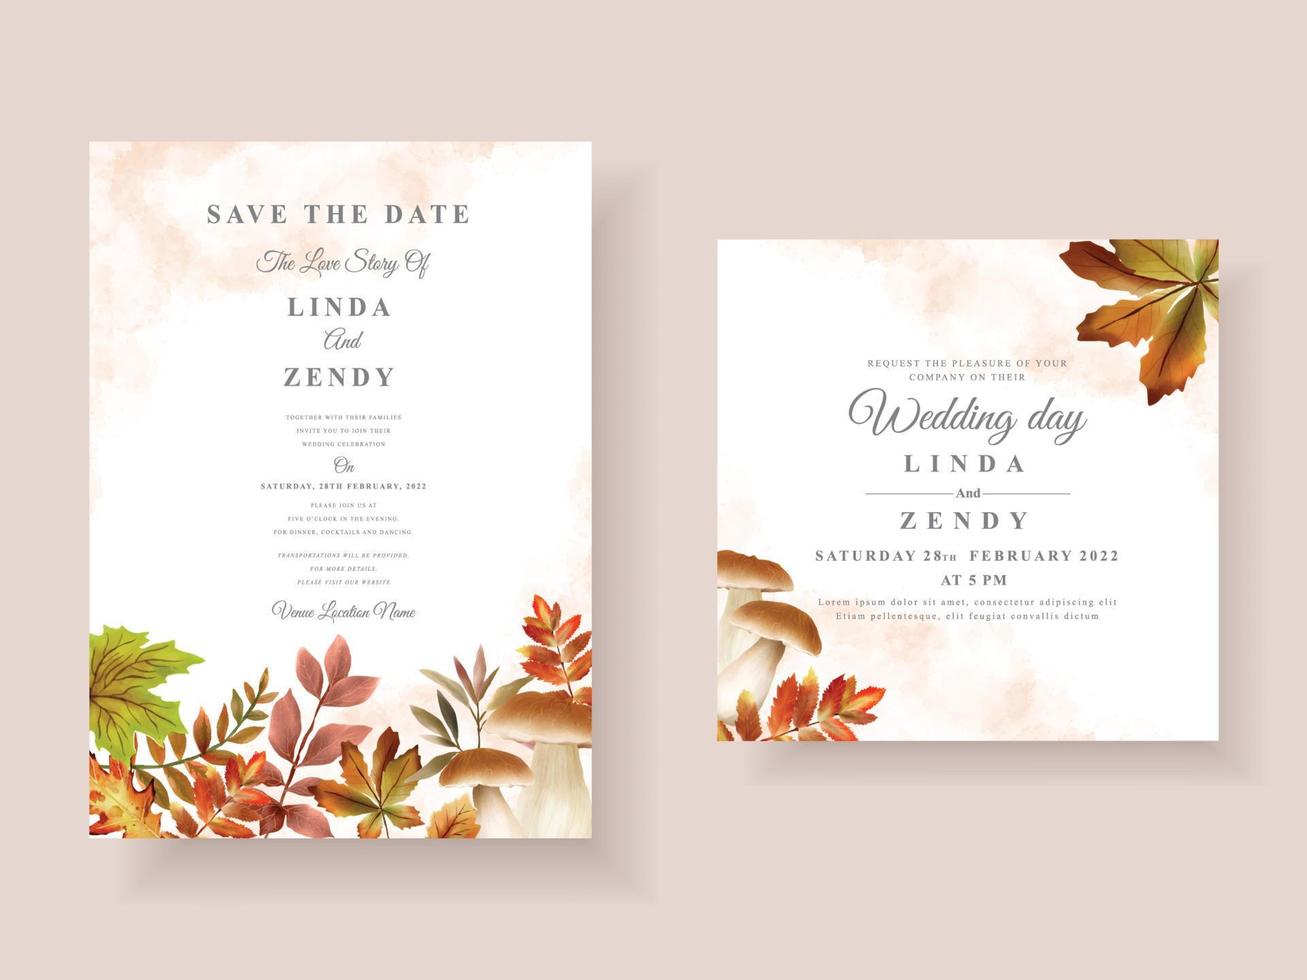 Wedding invitation card with autumn season theme vector